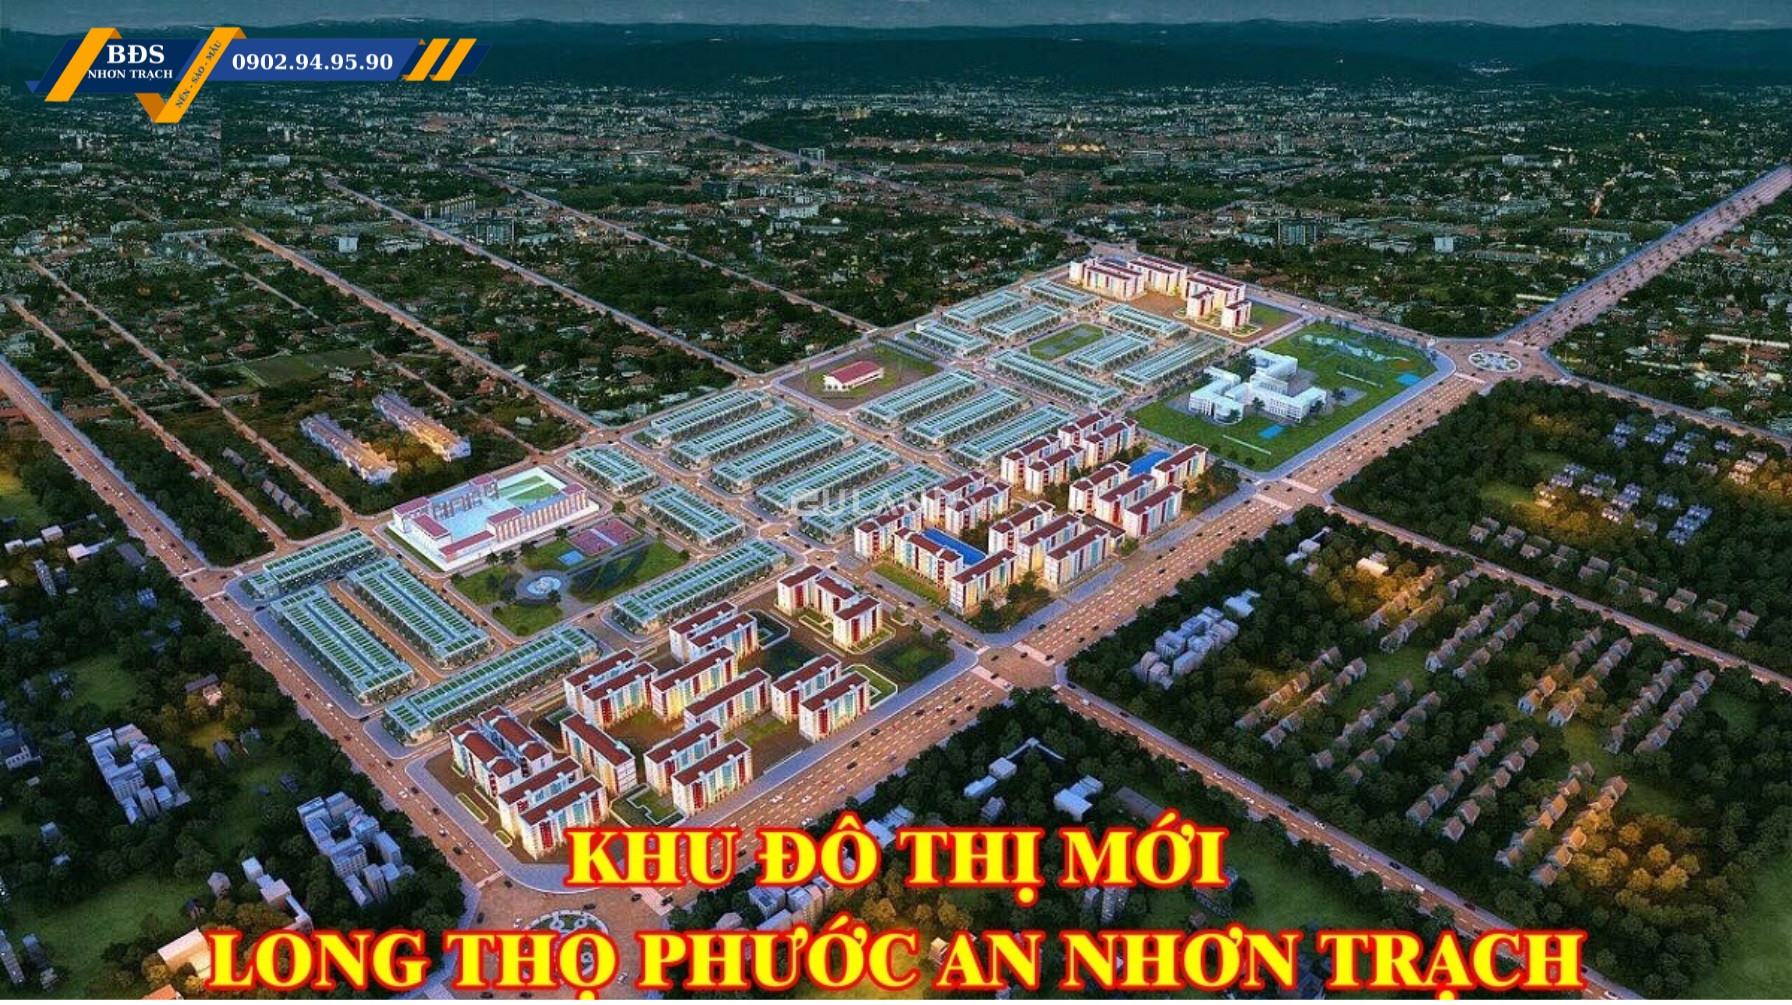 Bán nền đất Nhà Phố  mặt tiền đường Lê Hồng Phong LG53m thuộc dự án Hud Nhơn Trạch - DT 90m2 Full thổ cư.